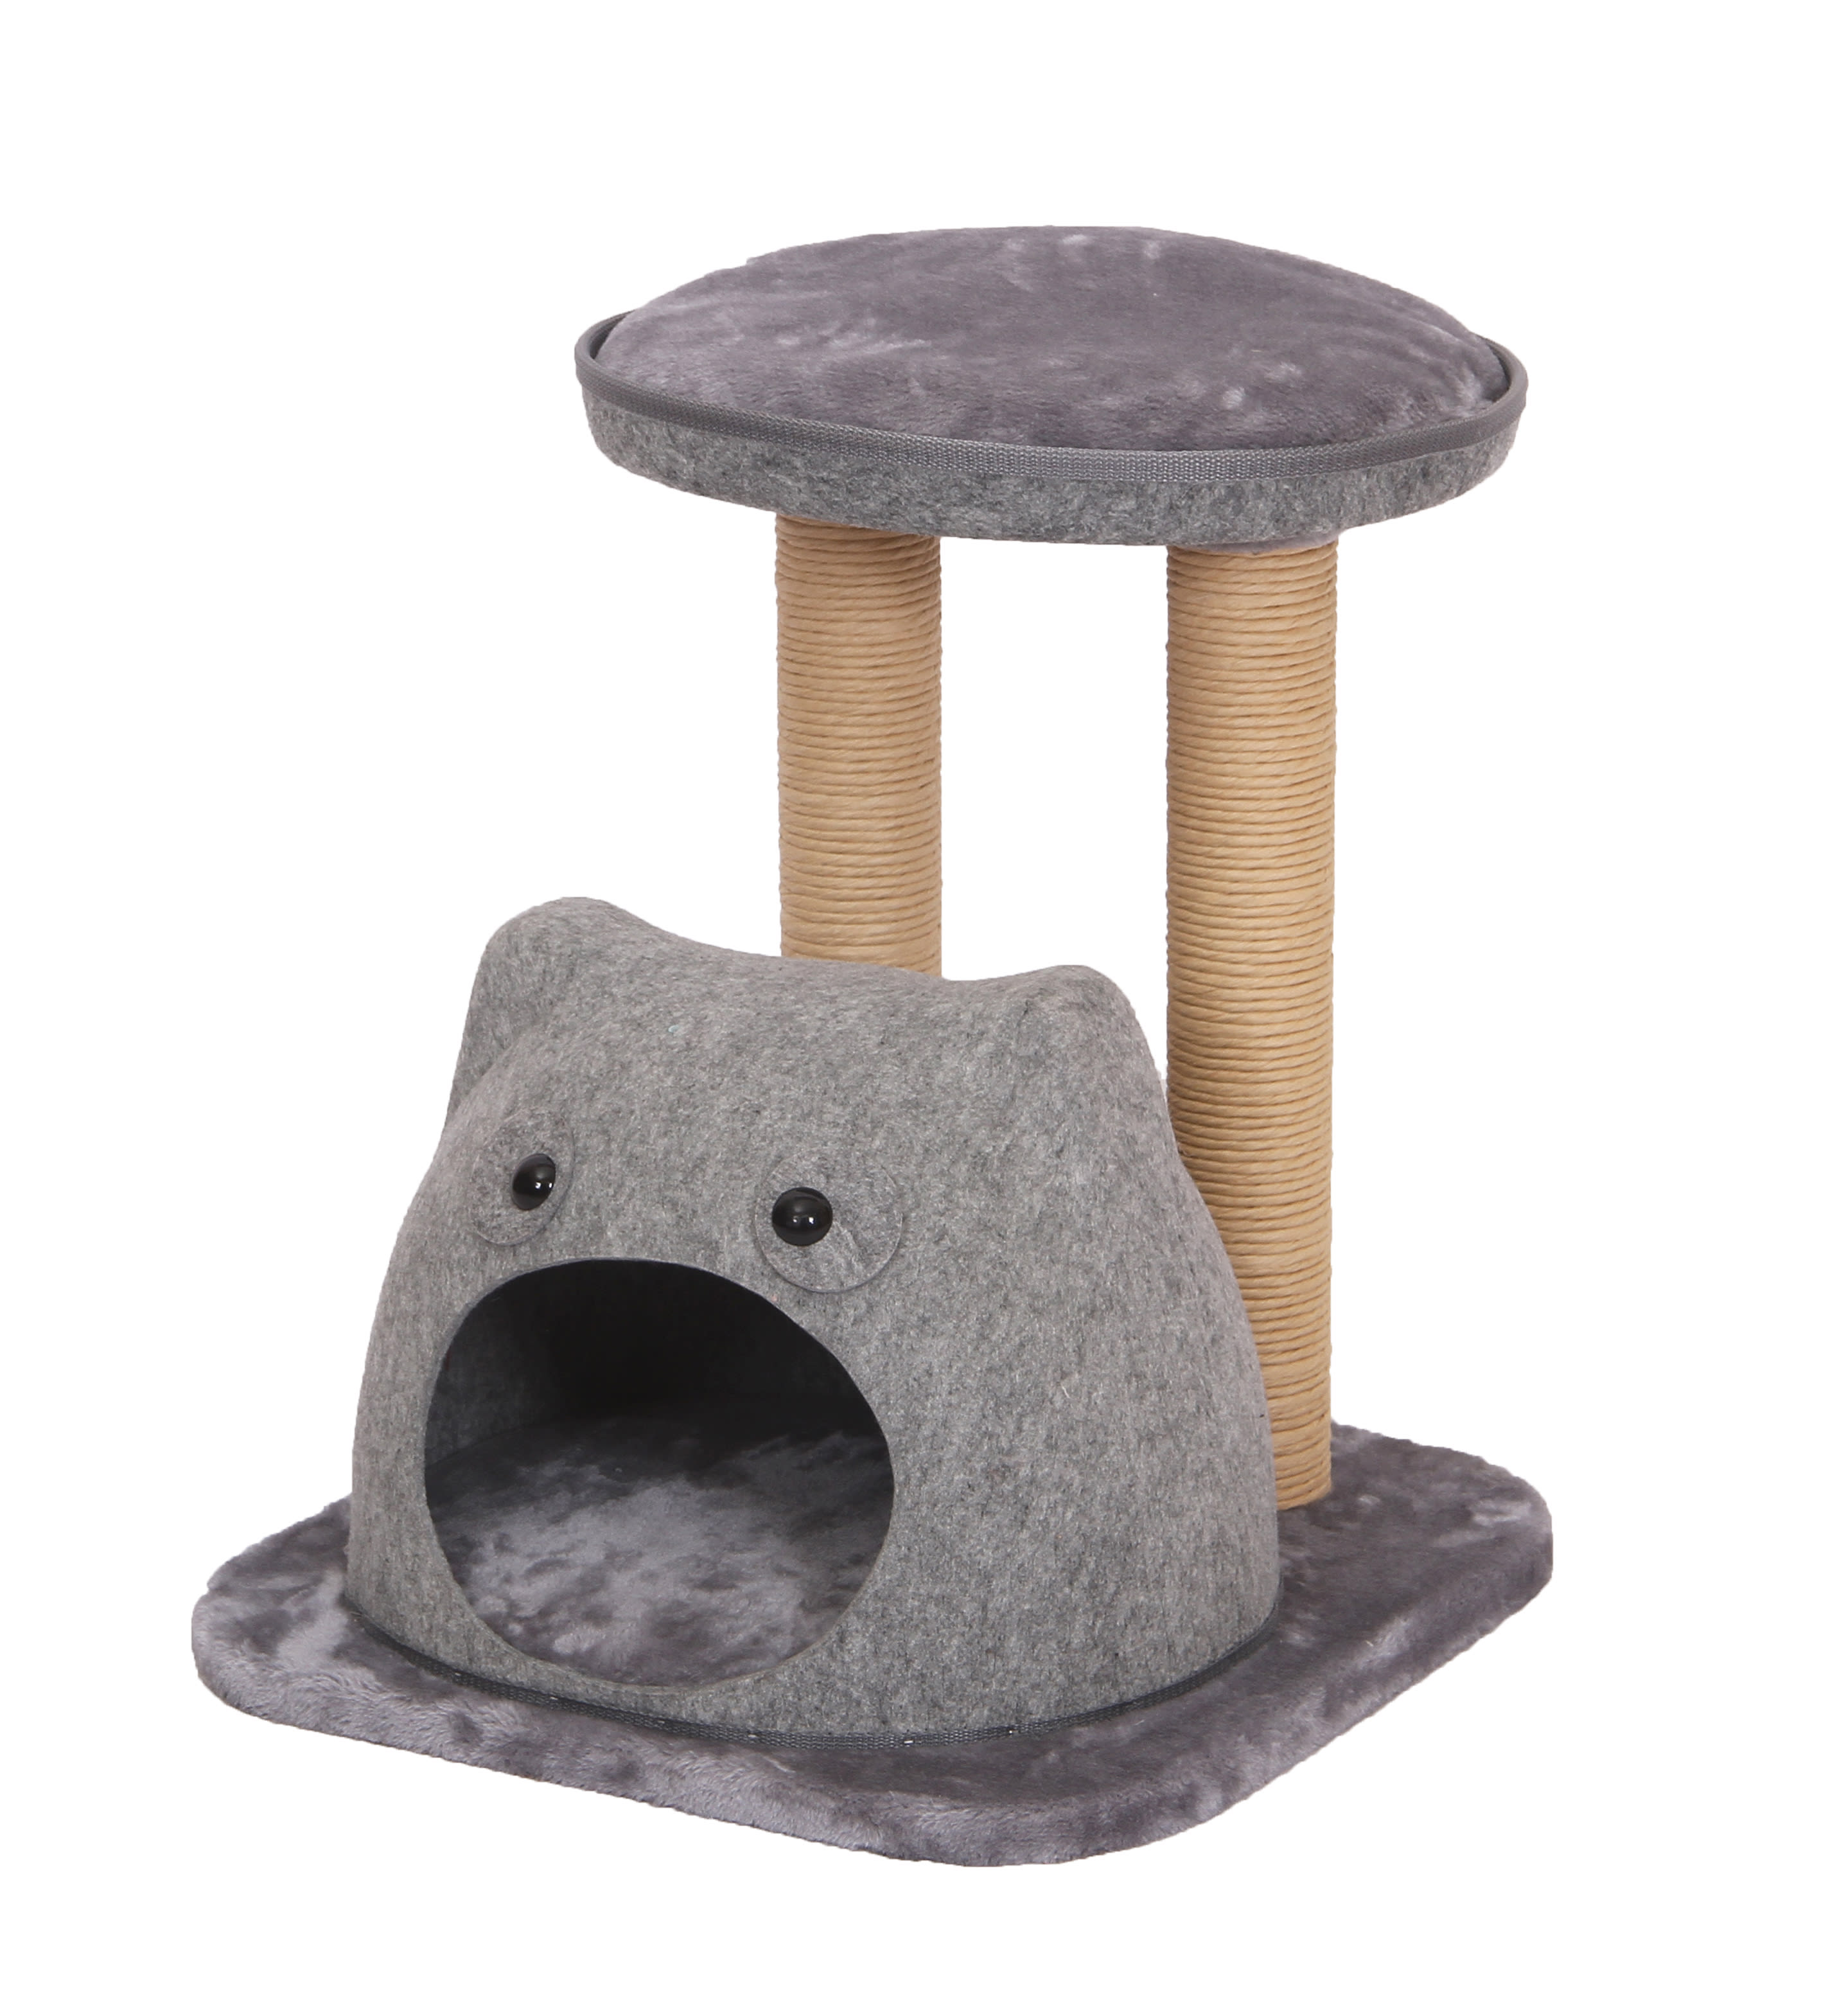 petco cat furniture